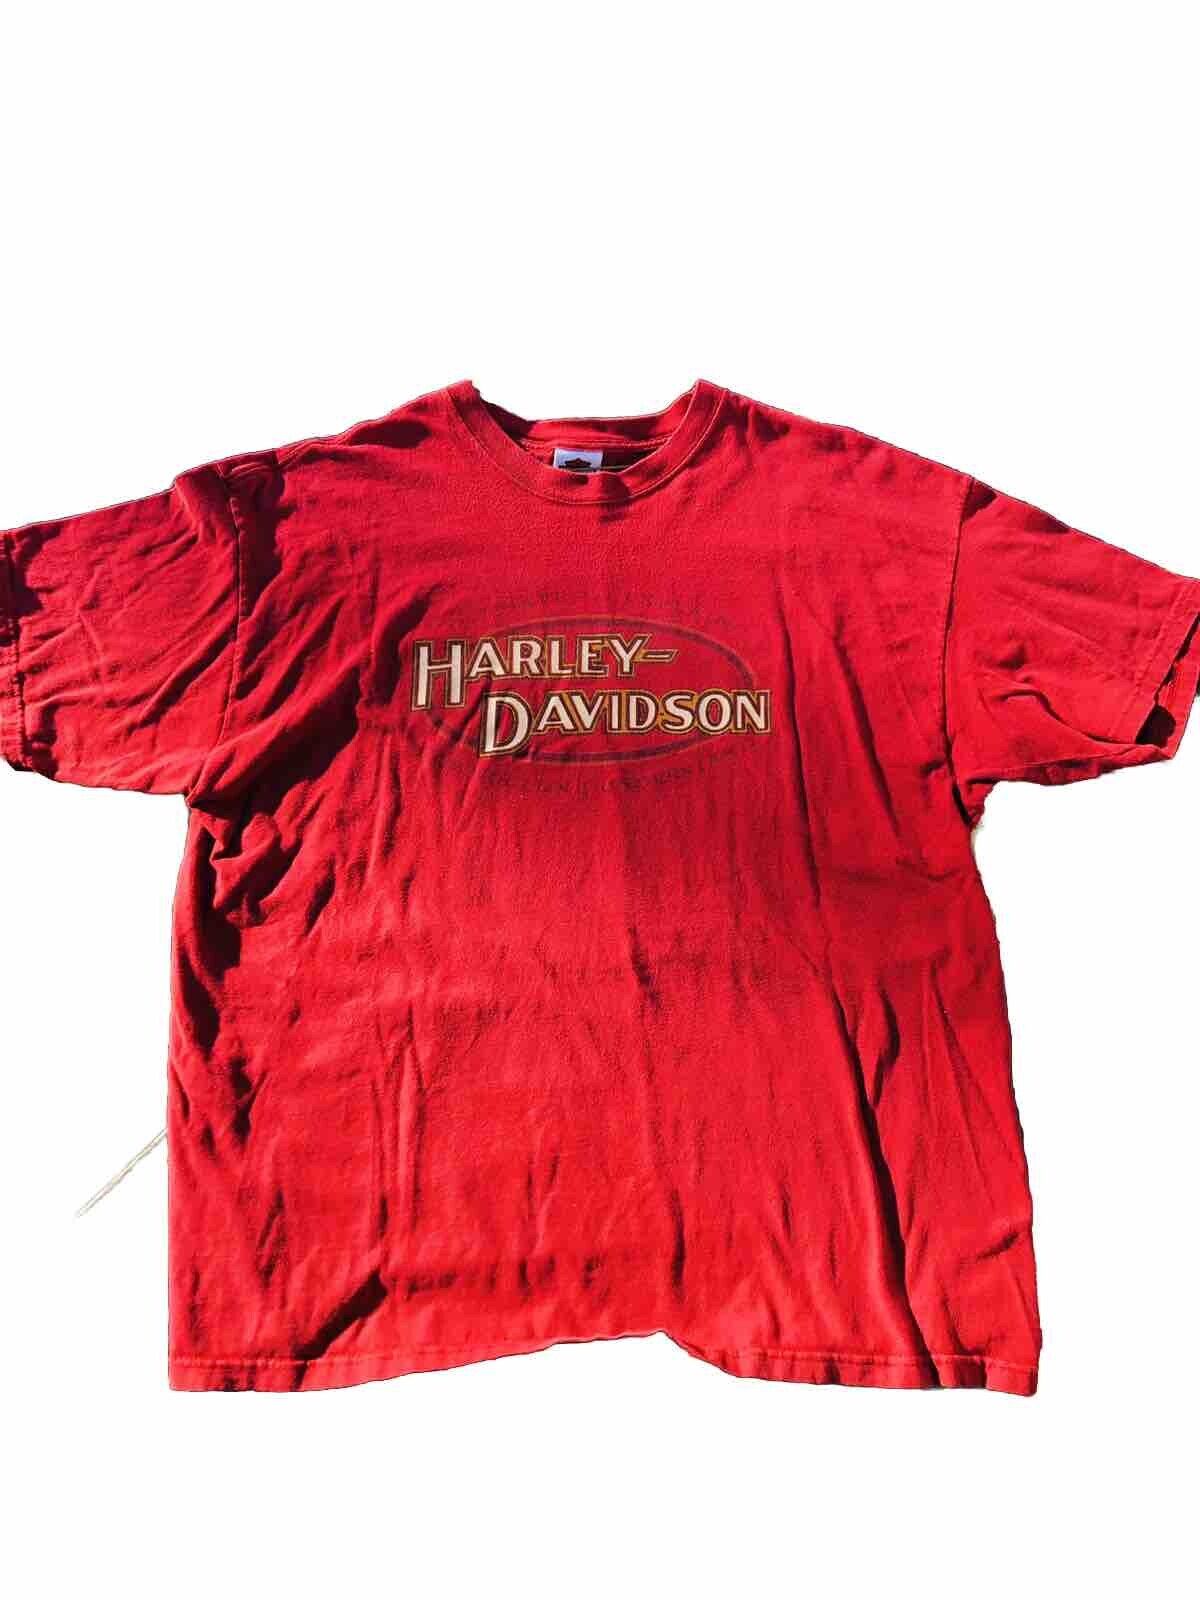 Vintage Harley Davidson Shirt 2XL, Laurel, Maryland